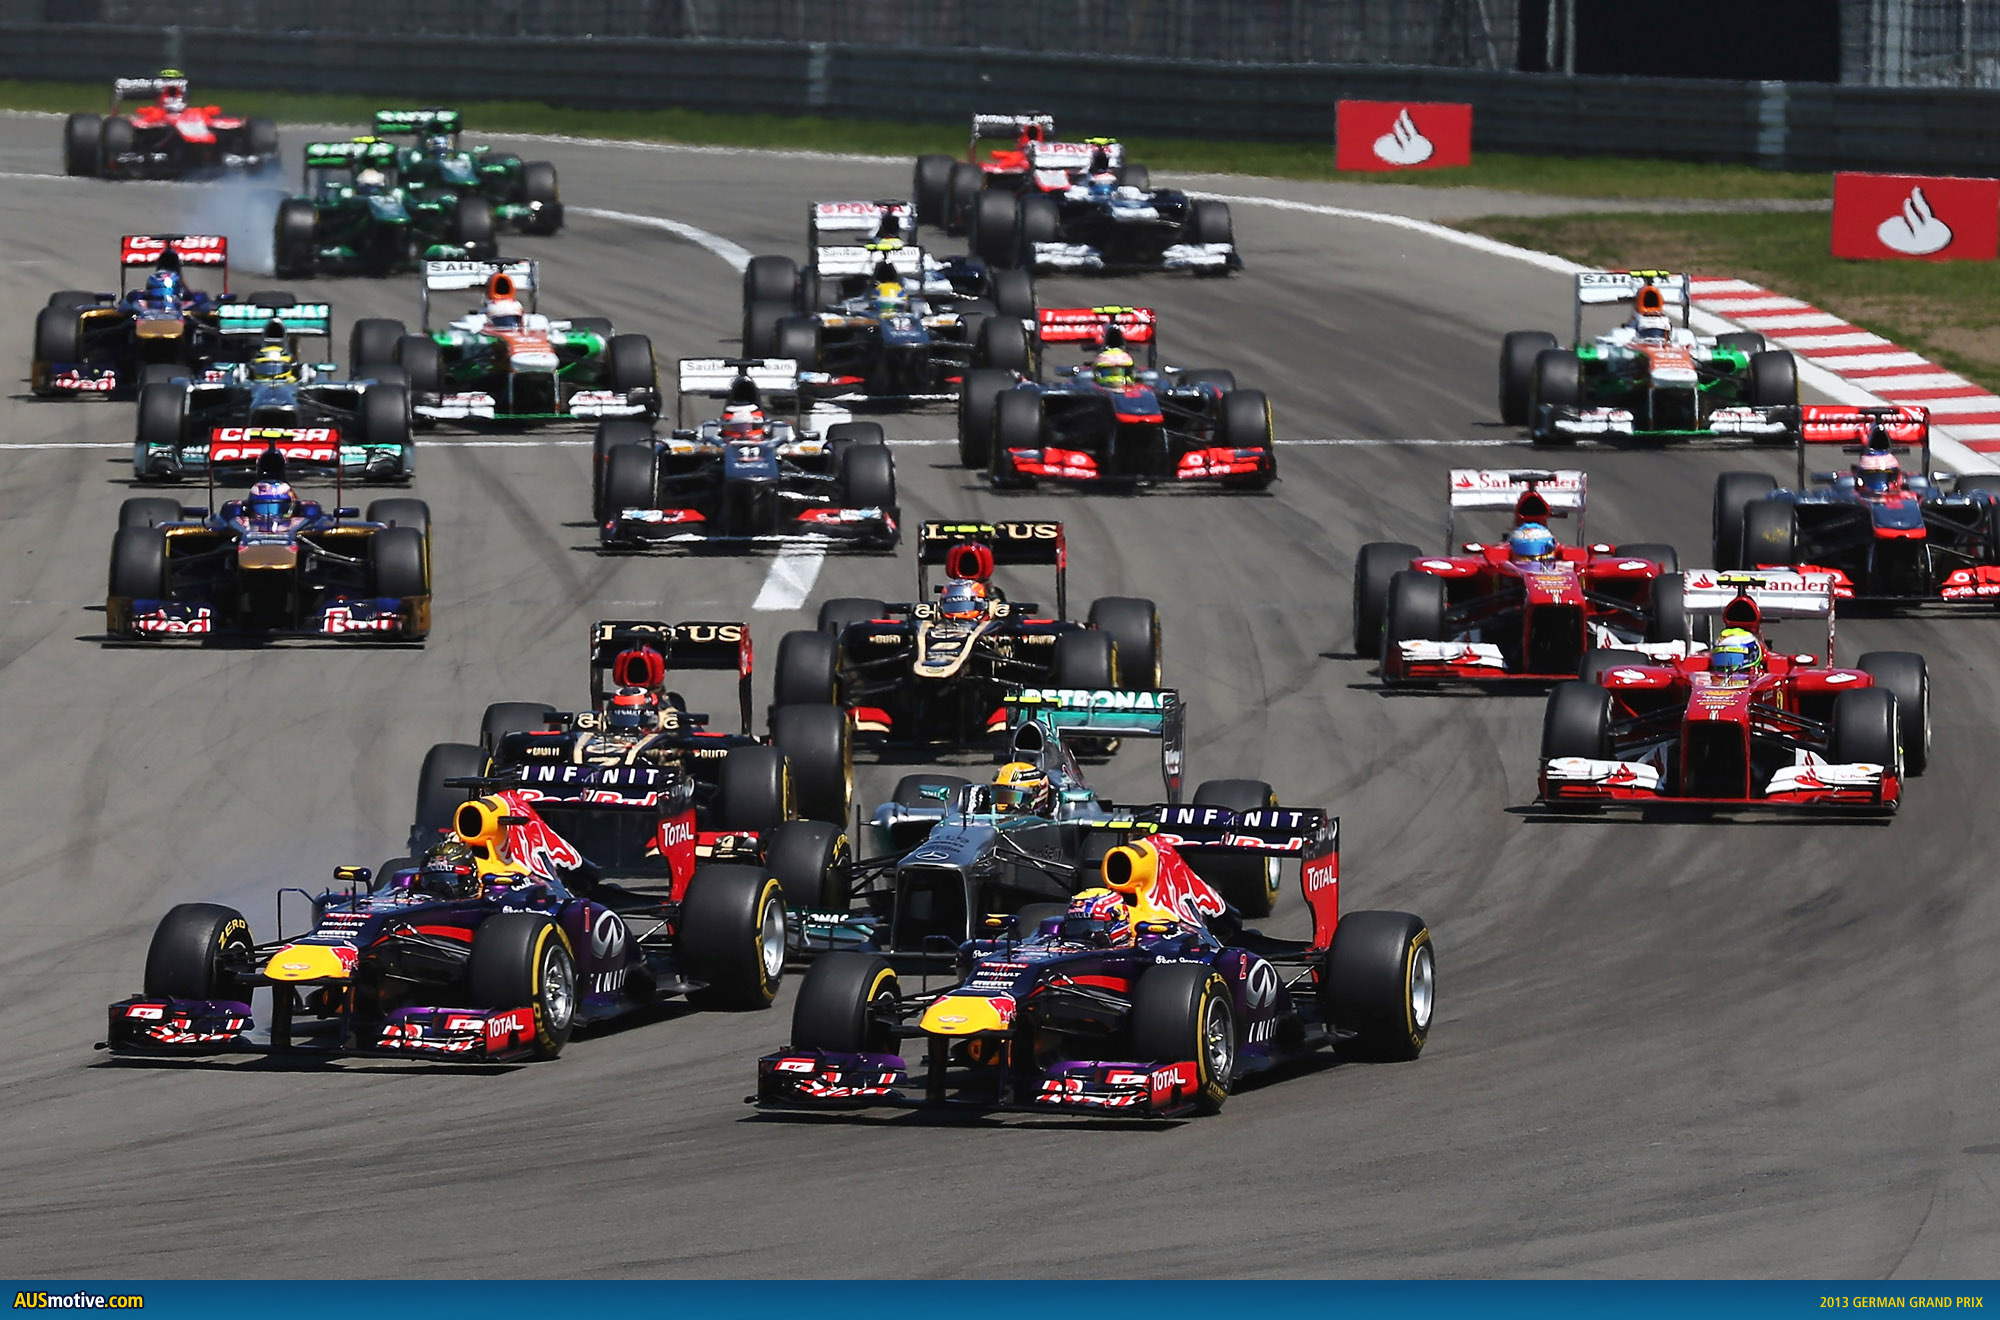 AUSmotive.com » Some hope for 2015 German Grand Prix?